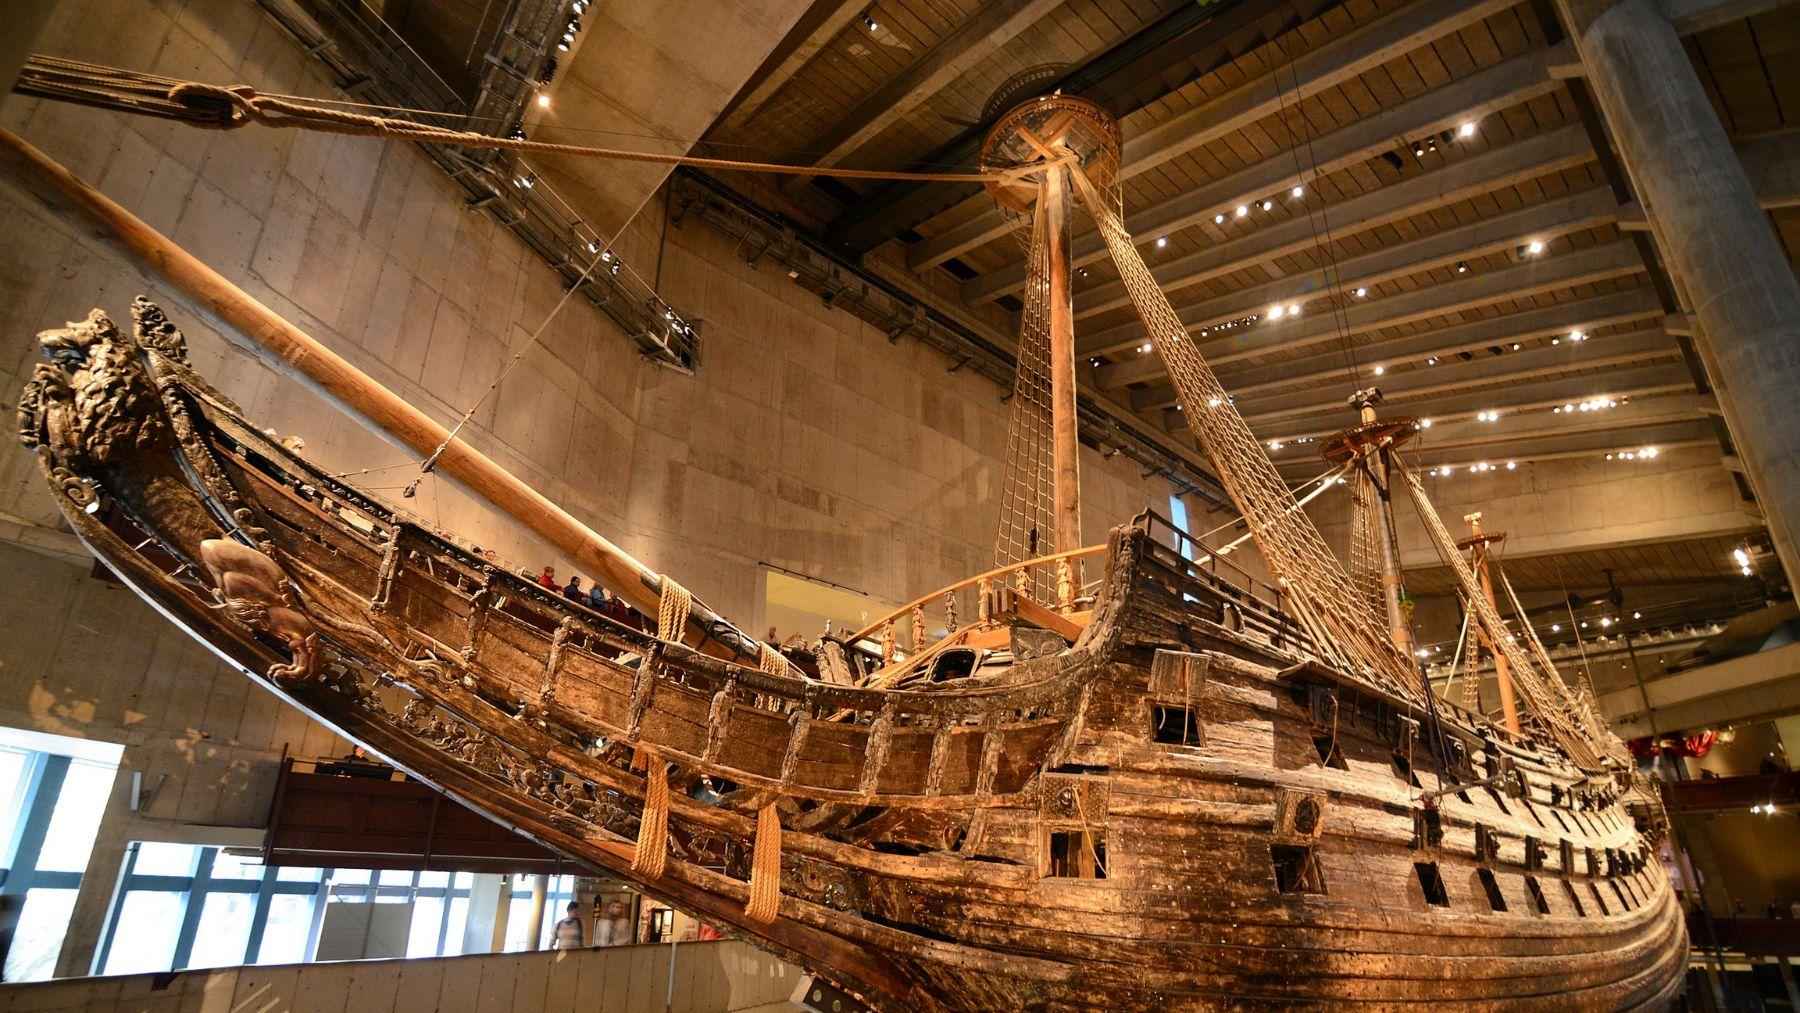 اكتشاف سفينة حربية غرقت قبل 400 عام في السويد بحالة ممتازة!